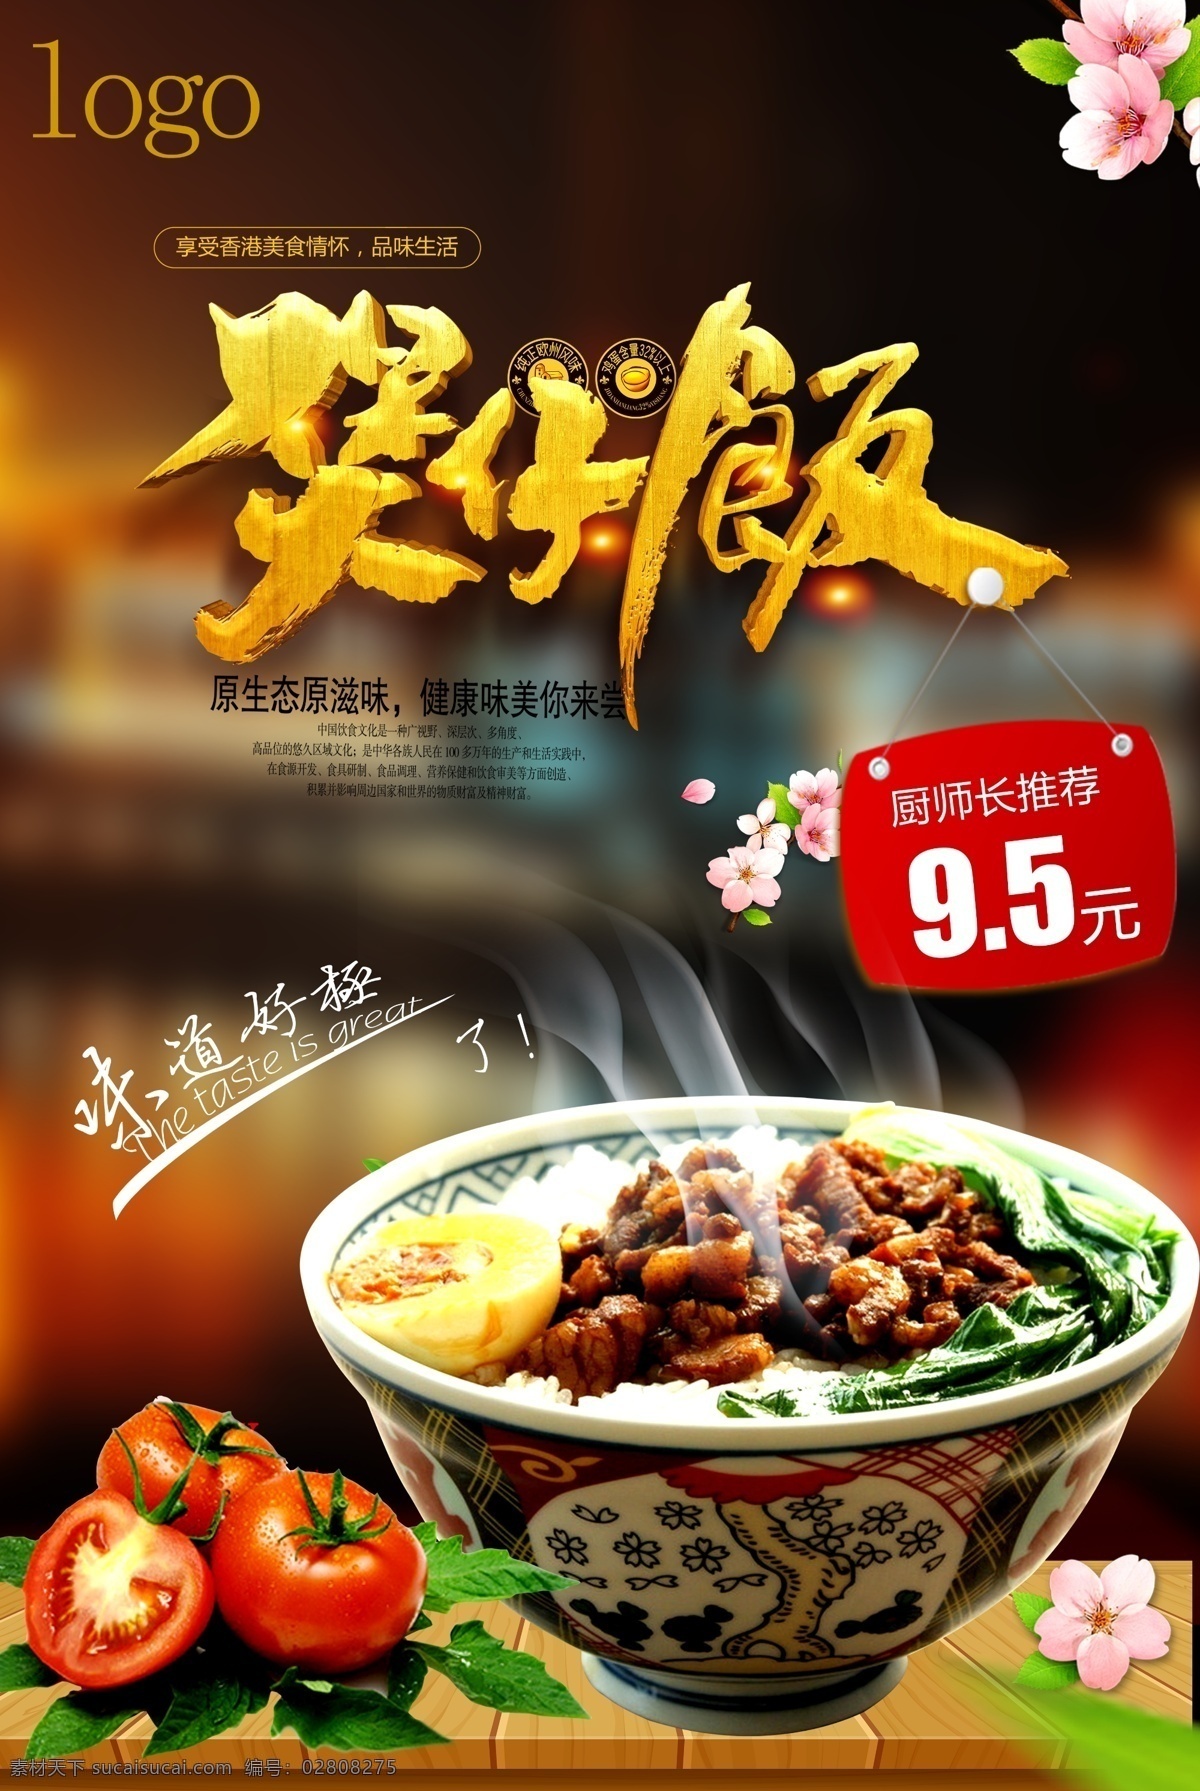 美味 卤肉 饭 宣传海报 模版 美食 简约 大气 调料 特色 卤肉饭 台湾感兴趣 免费模版